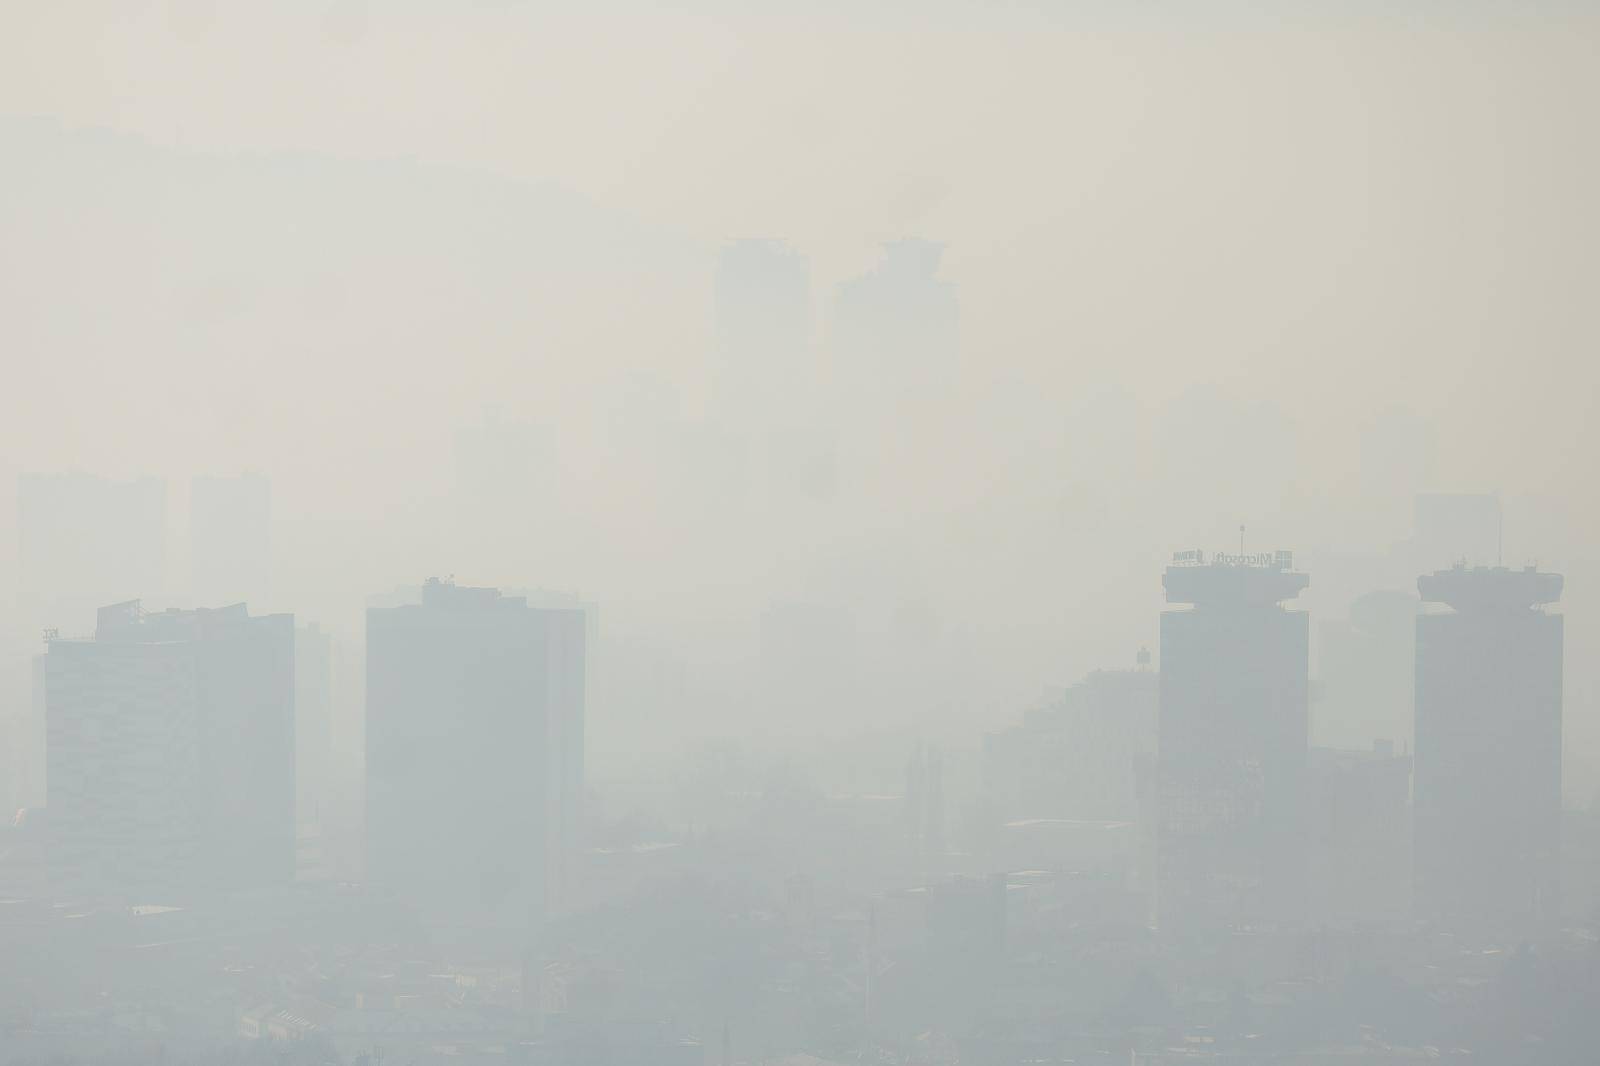 Sarajevo poptpuno prekriveno smogom i dalje pri vrhu ljestvice najzagađenijih glavnih gradova